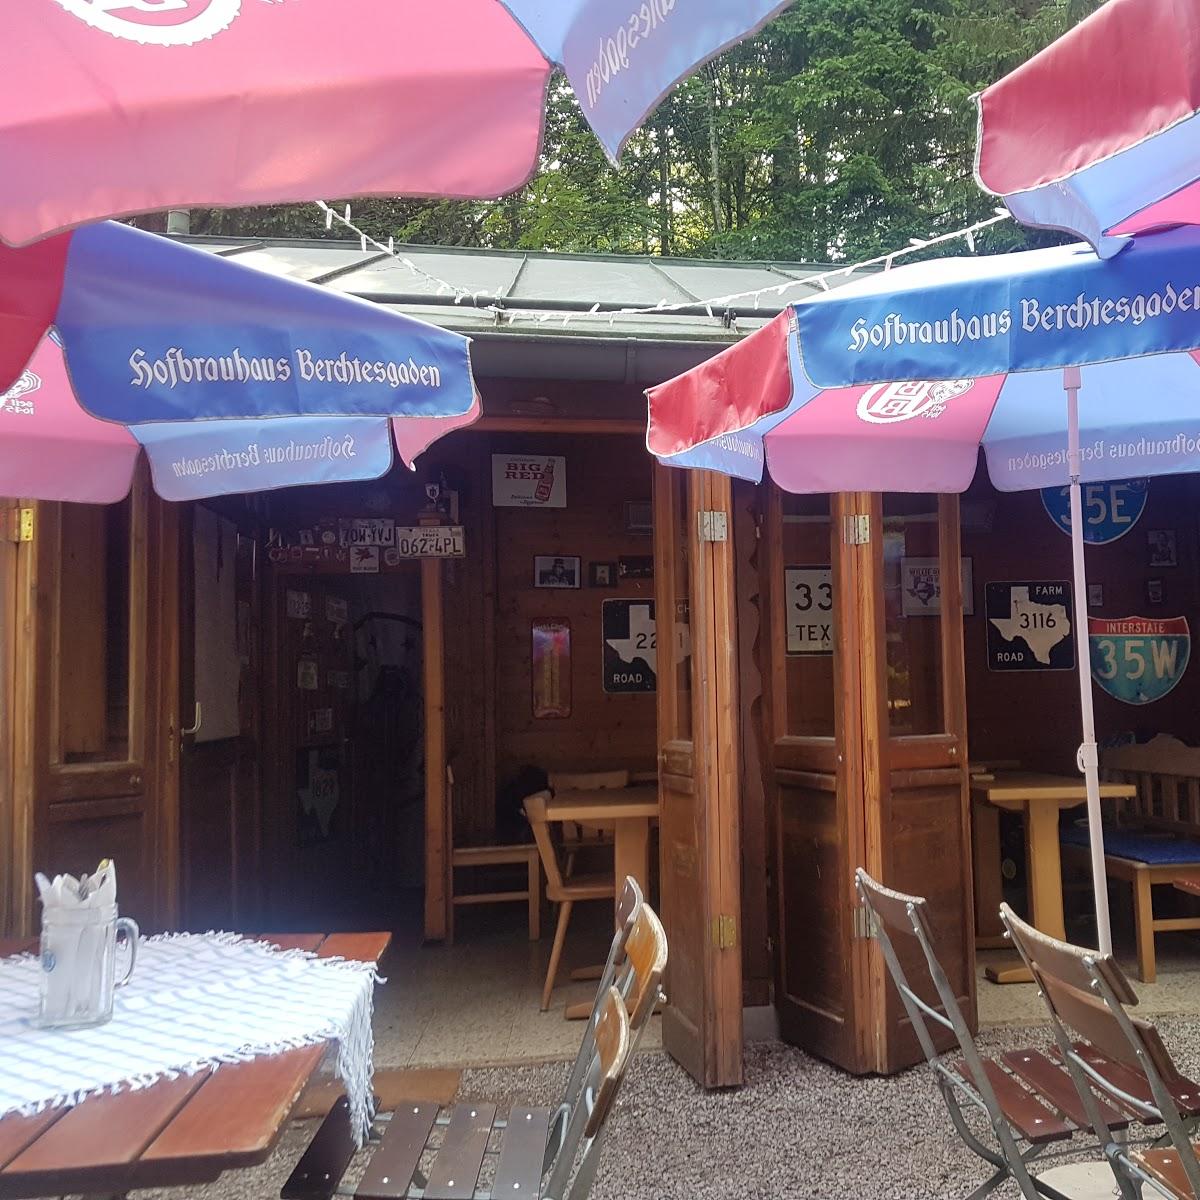 Restaurant "Gletscherquellenhütte" in Ramsau bei Berchtesgaden